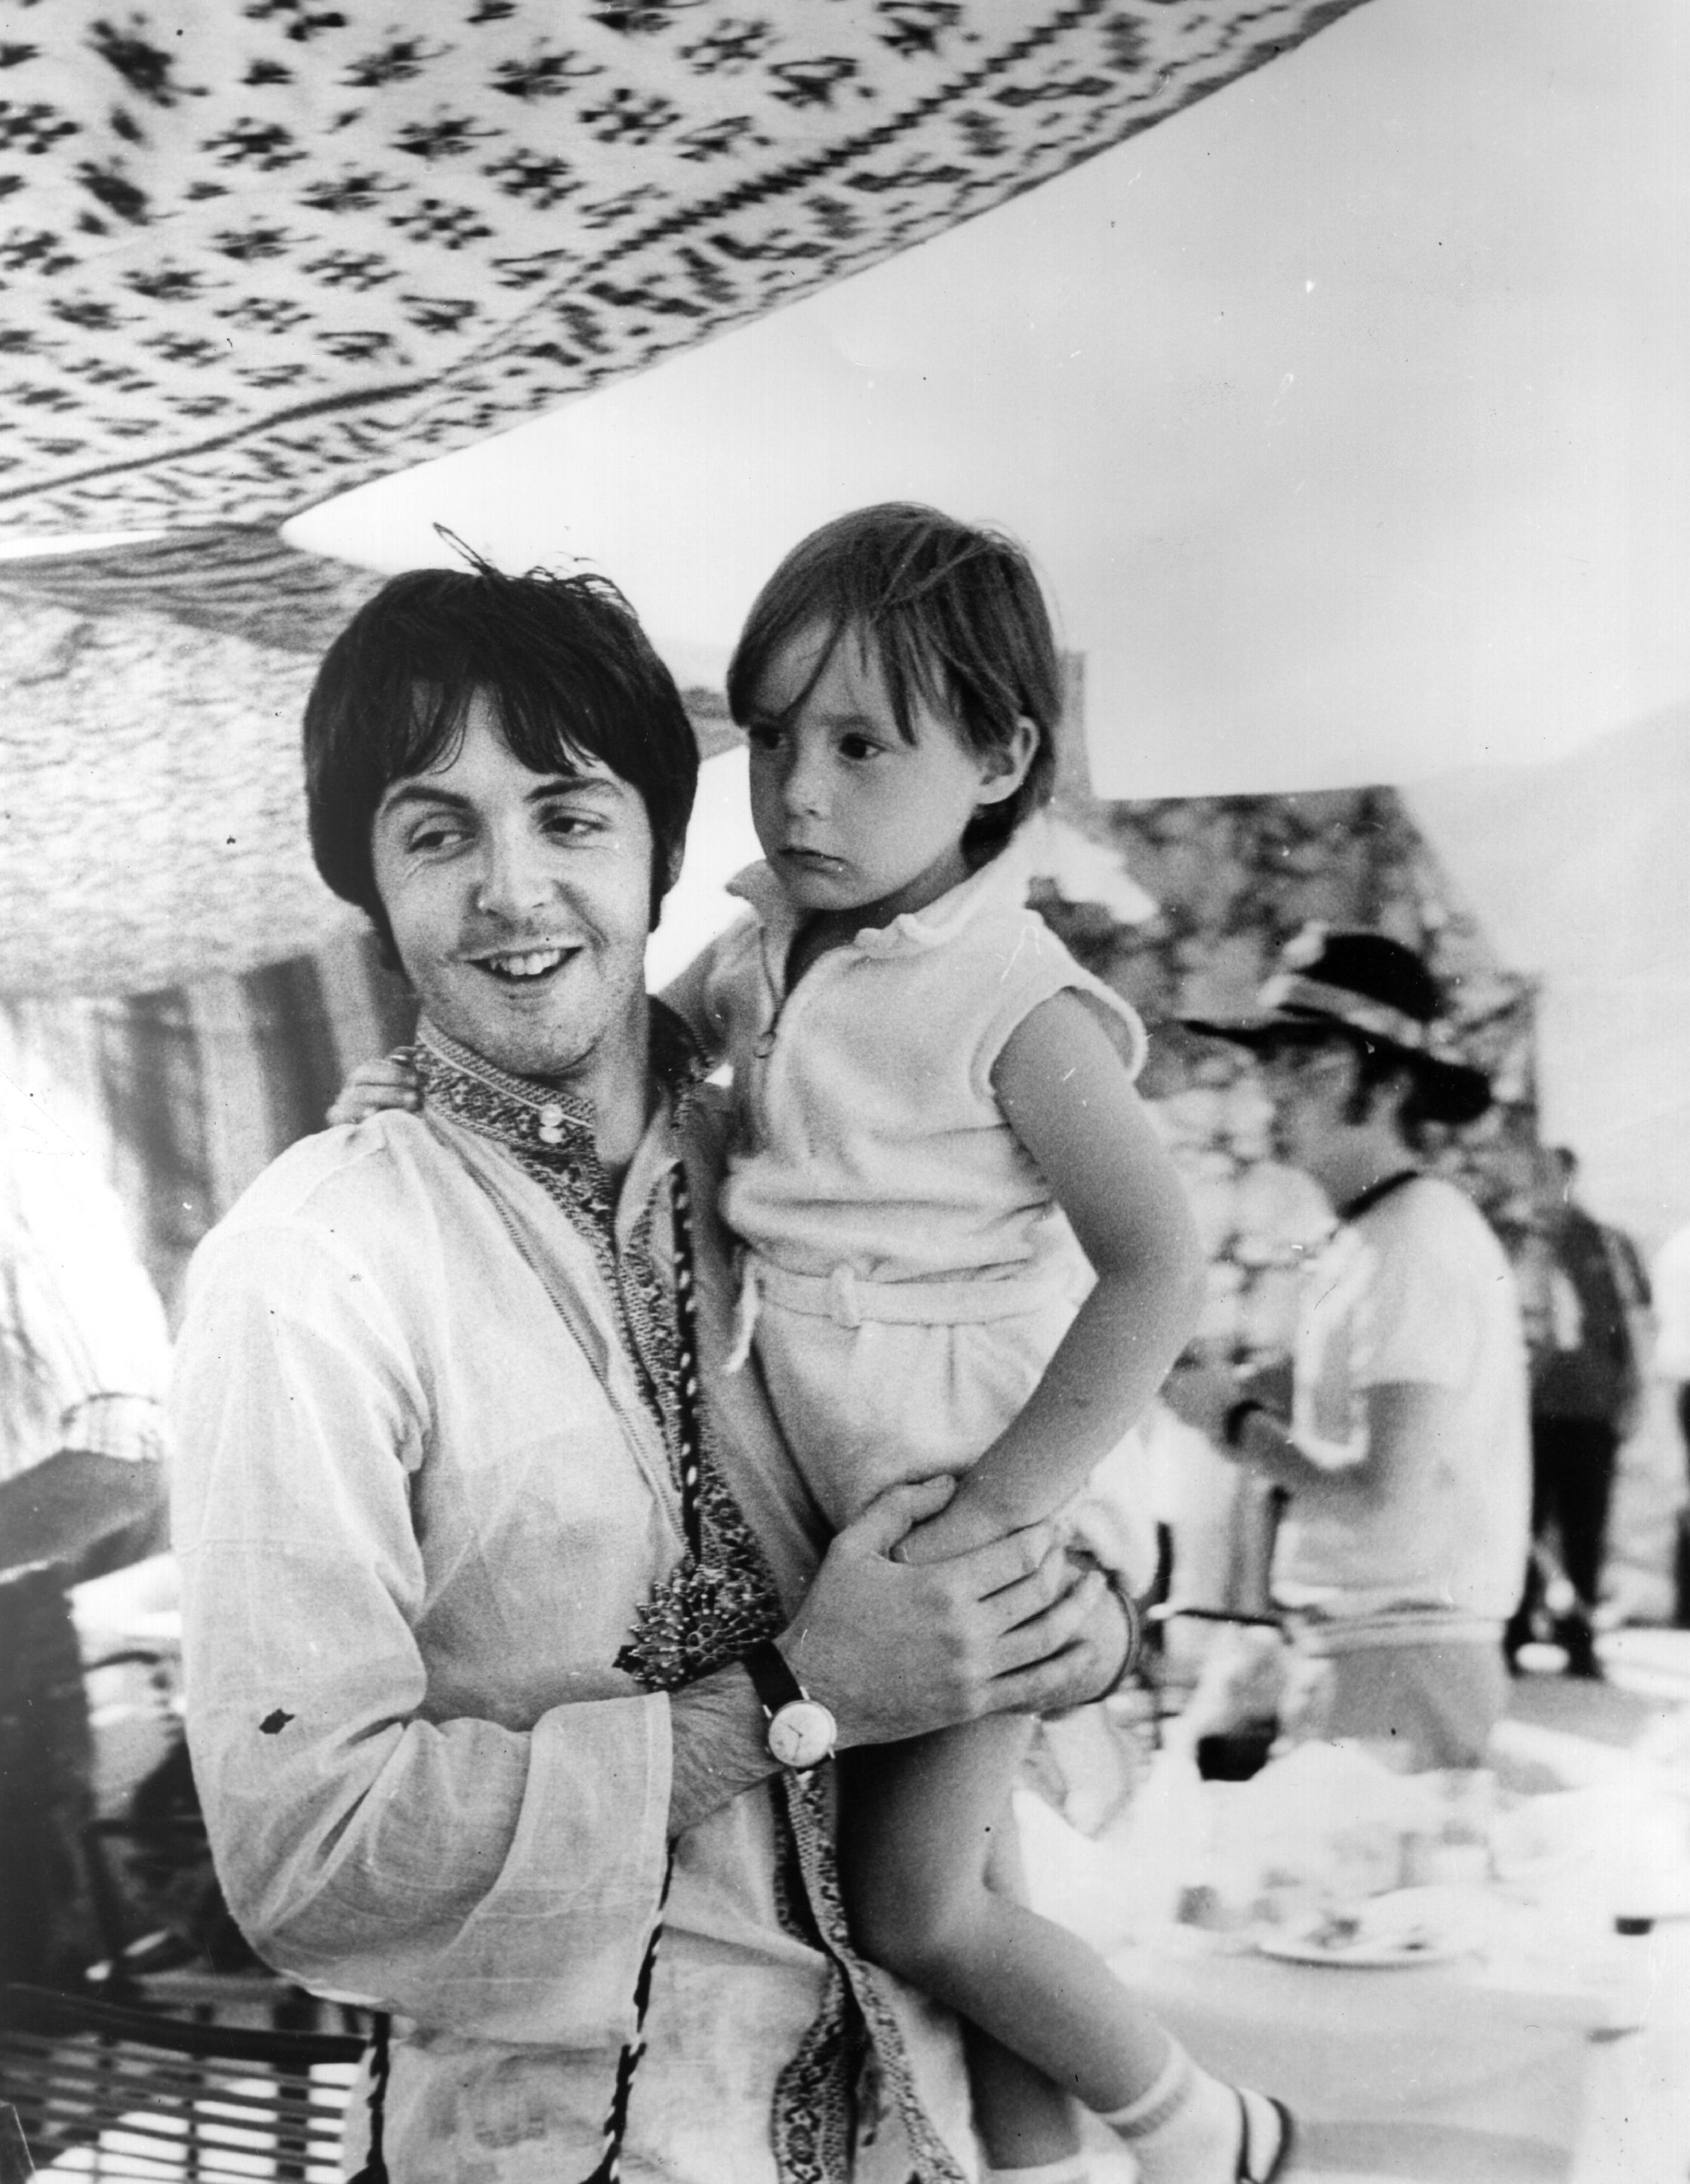 Paul McCartney with a 4-year-old Julian Lennon in Greece